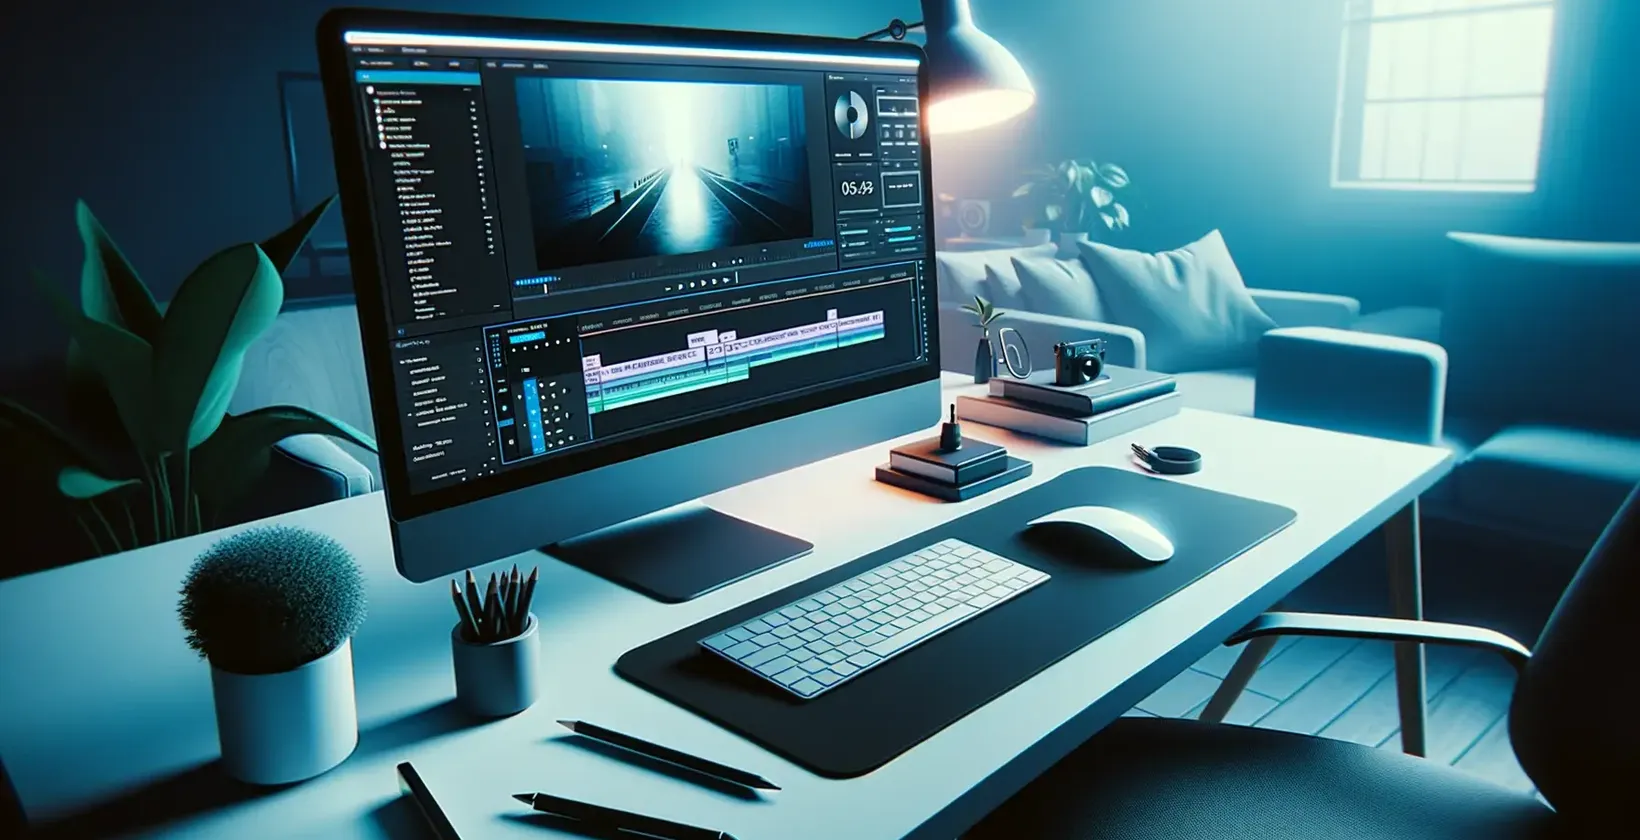 أضف نصا إلى الفيديو باستخدام Adobe After Effects موضح من خلال مساحة عمل تحرير أنيقة مع ضوء أزرق